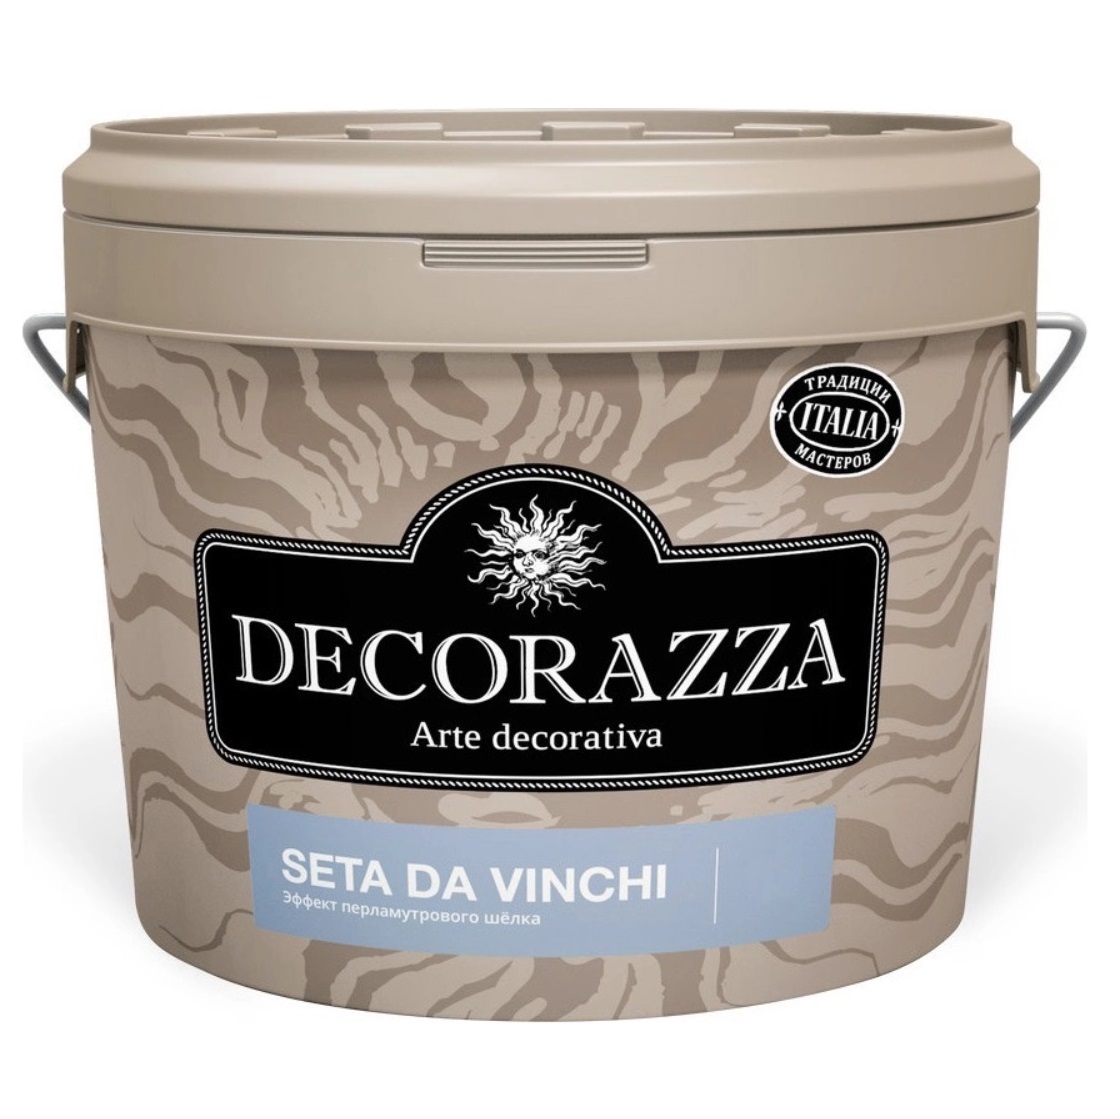 Декоративное покрытие с  более выраженным эффектом перламутрового шёлка Decorazza dz seta da vinci sd 001. 1 к декоративная краска decorazza seta oro 1 0кг